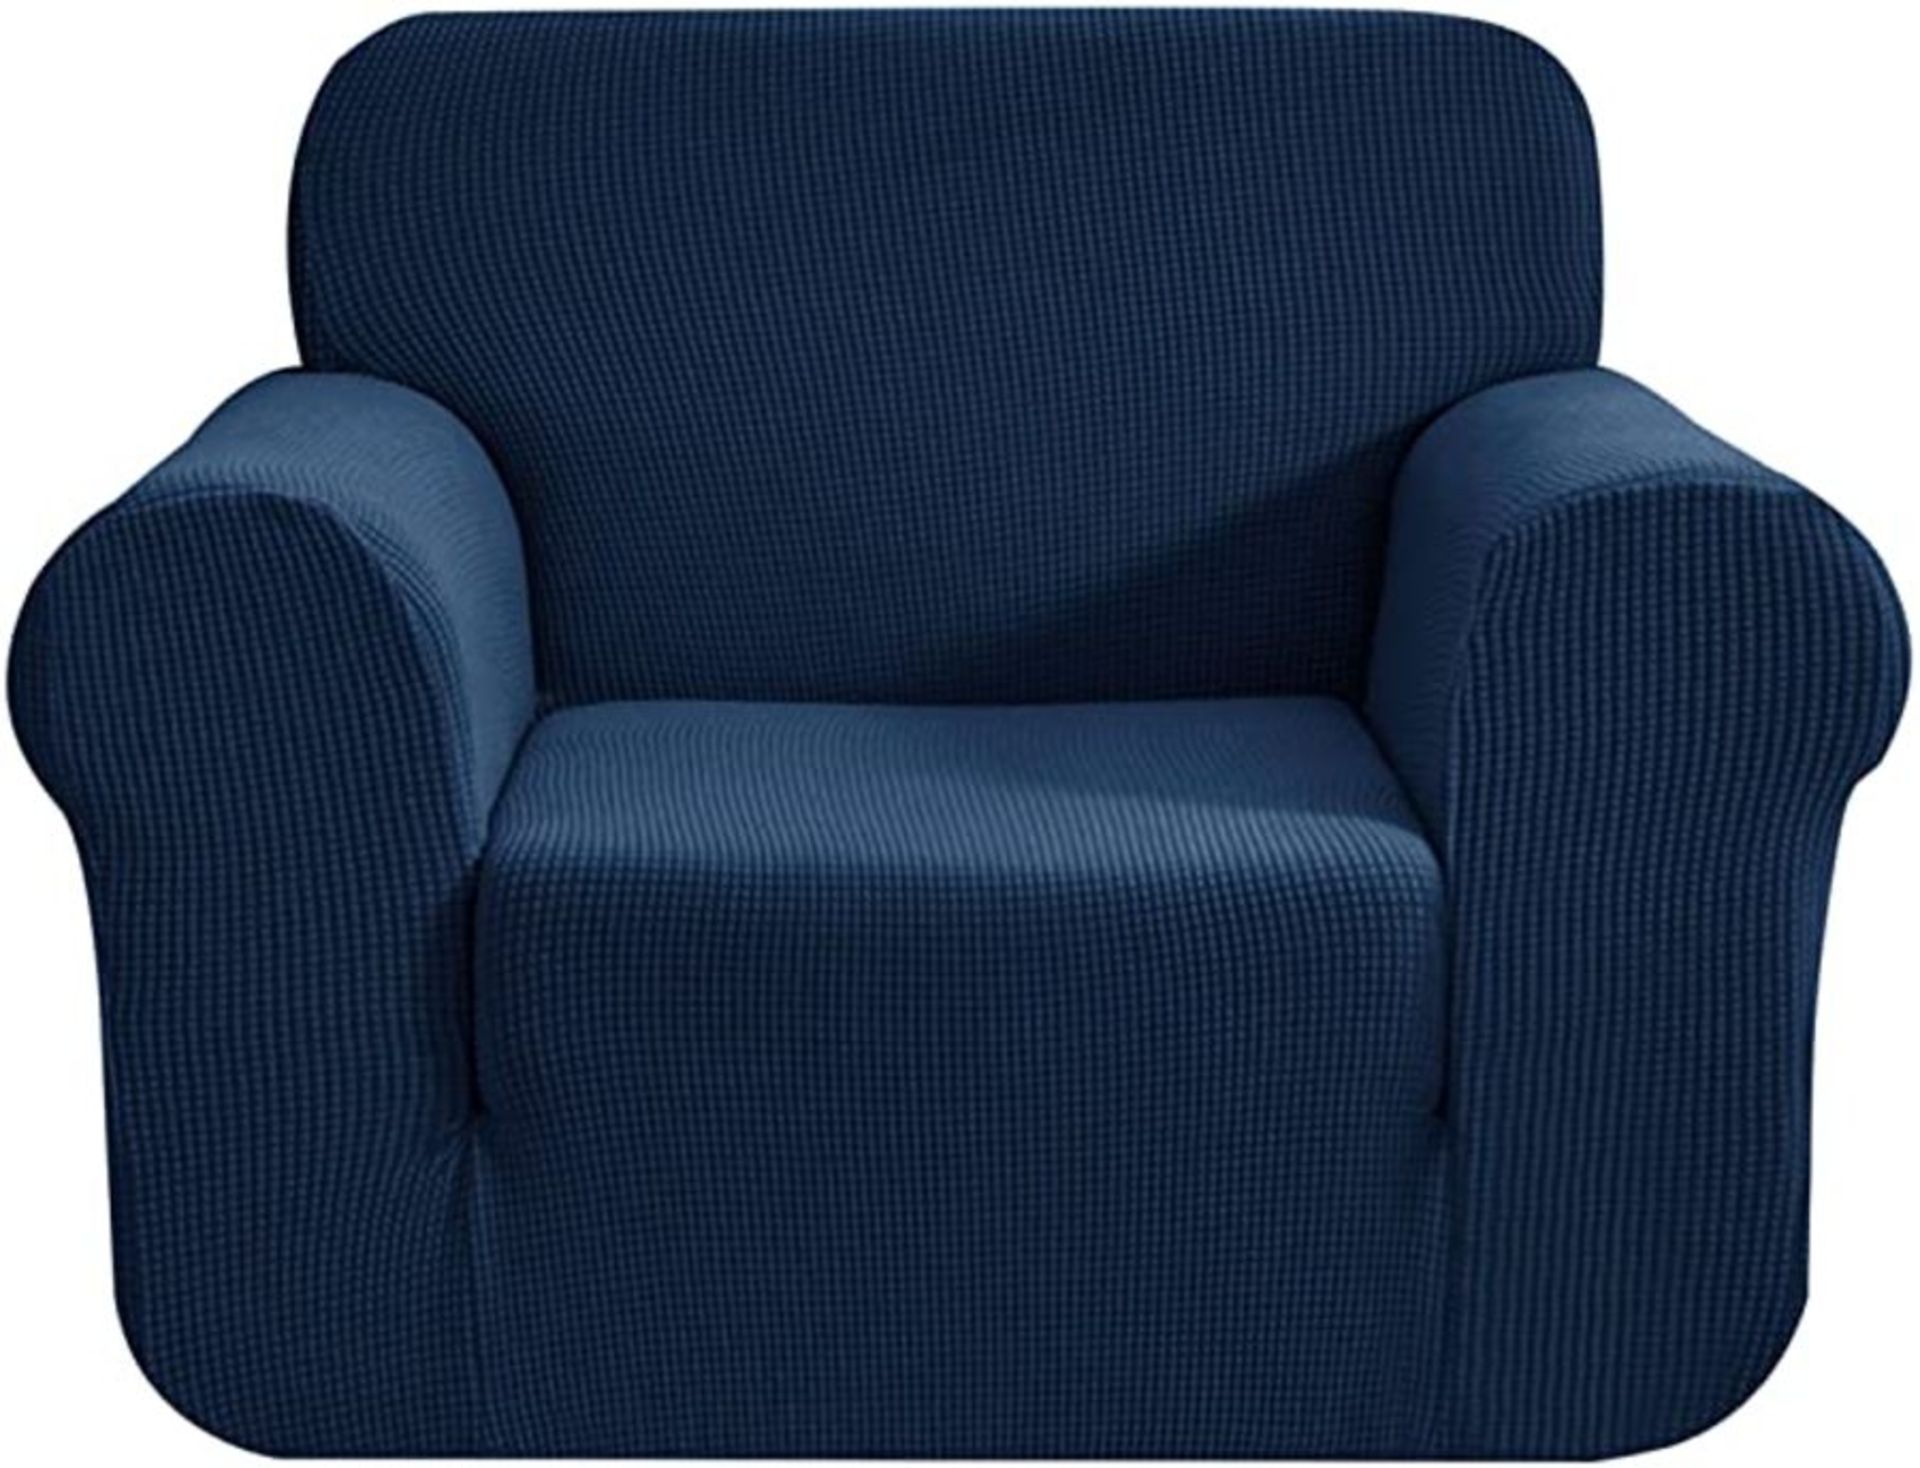 CHUN YI Arm Chair Slip Cover Dark Blue